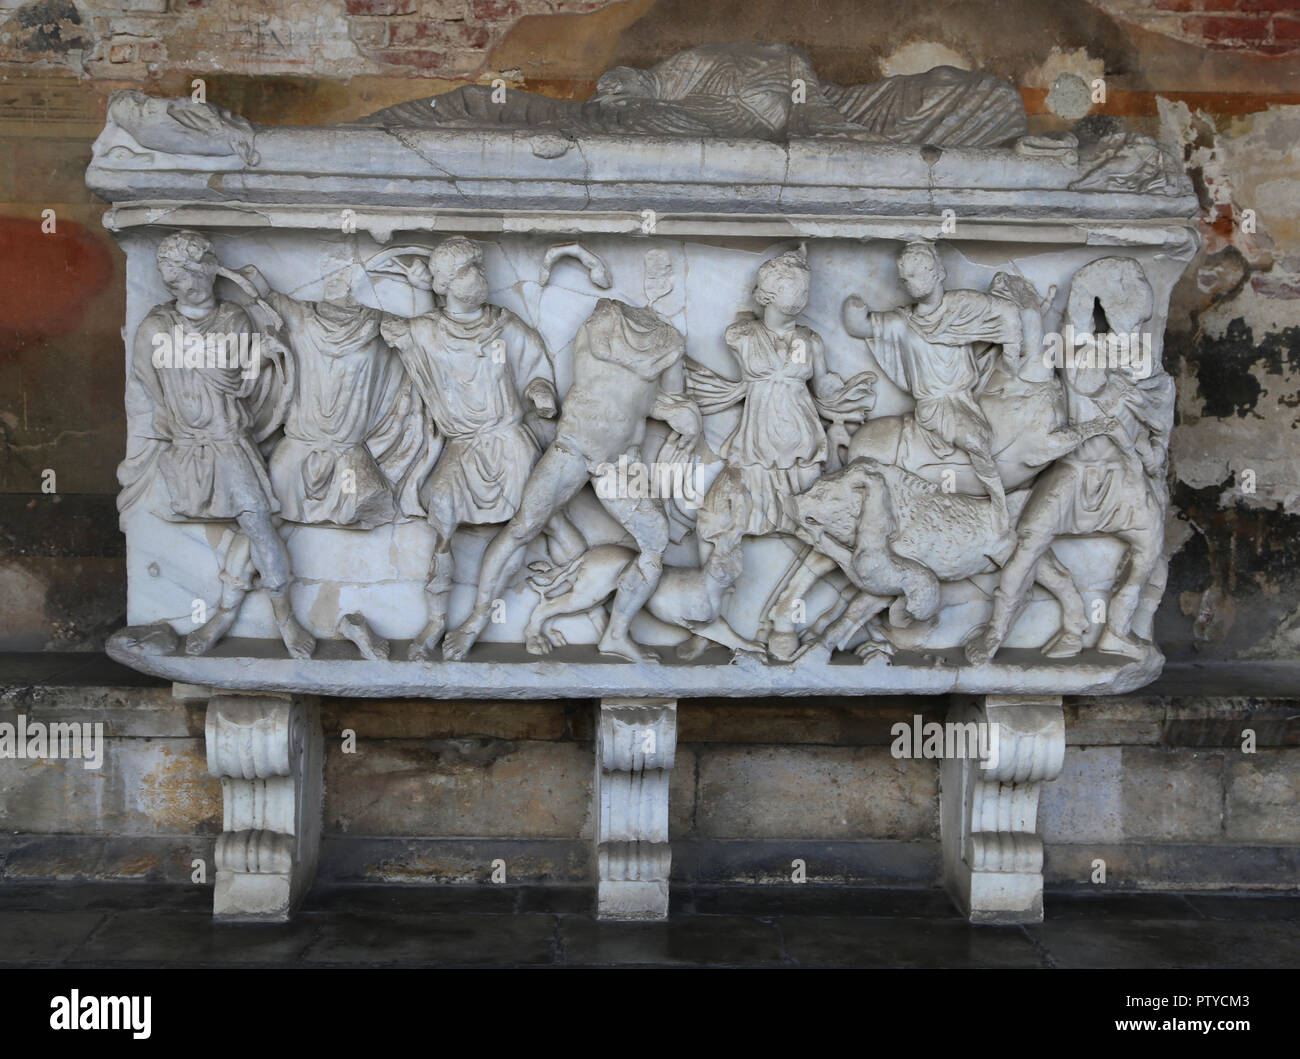 L'Italia. Pisa. Il Camposanto. Sarcofago romano con una scena di caccia Caledonia. Pannello anteriore. Il marmo. 290-295 CE. Foto Stock